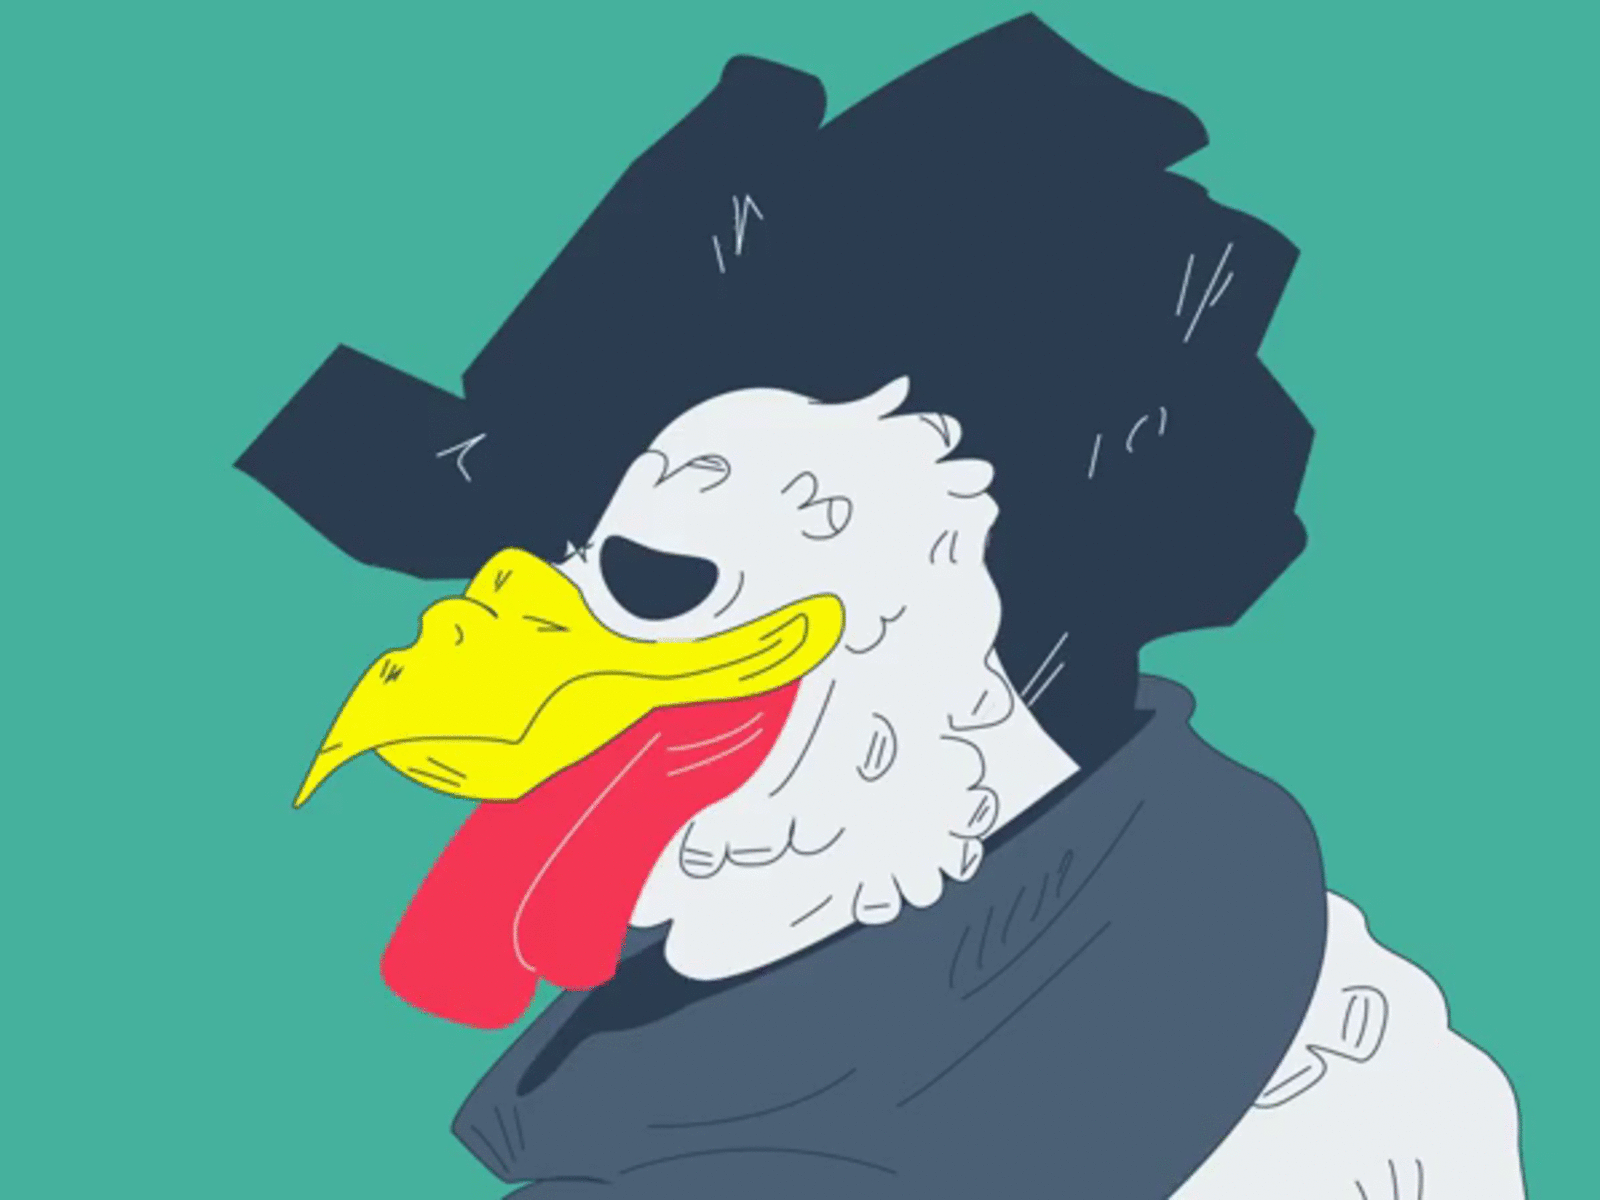 Sad Rooster animation art character design illustration sketch